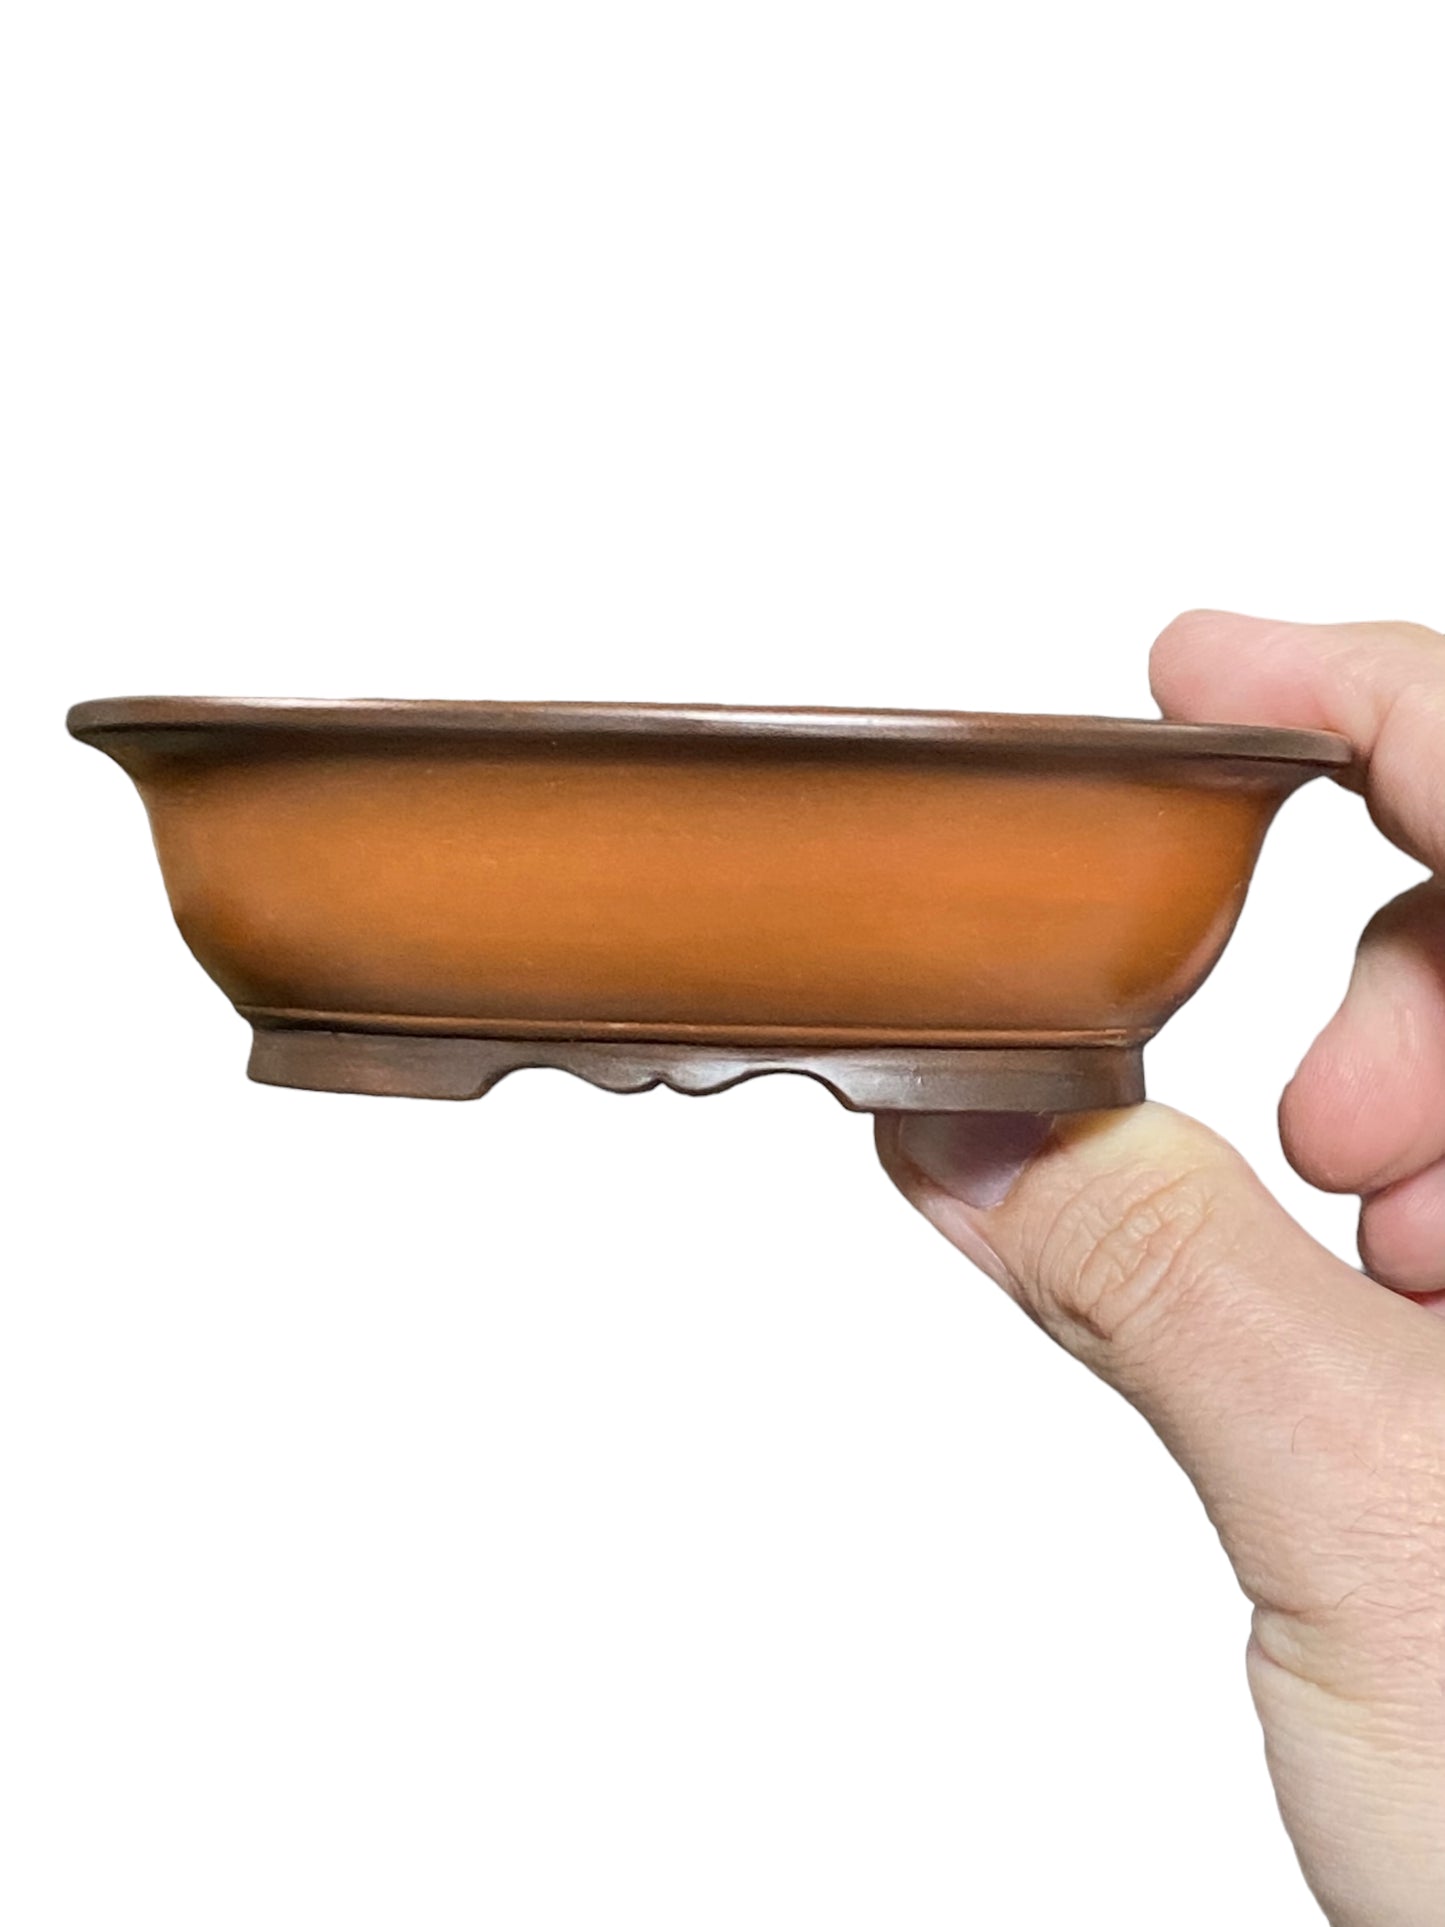 Hokidou - Beautiful Old Banded Oval Shaped Bonsai Pot